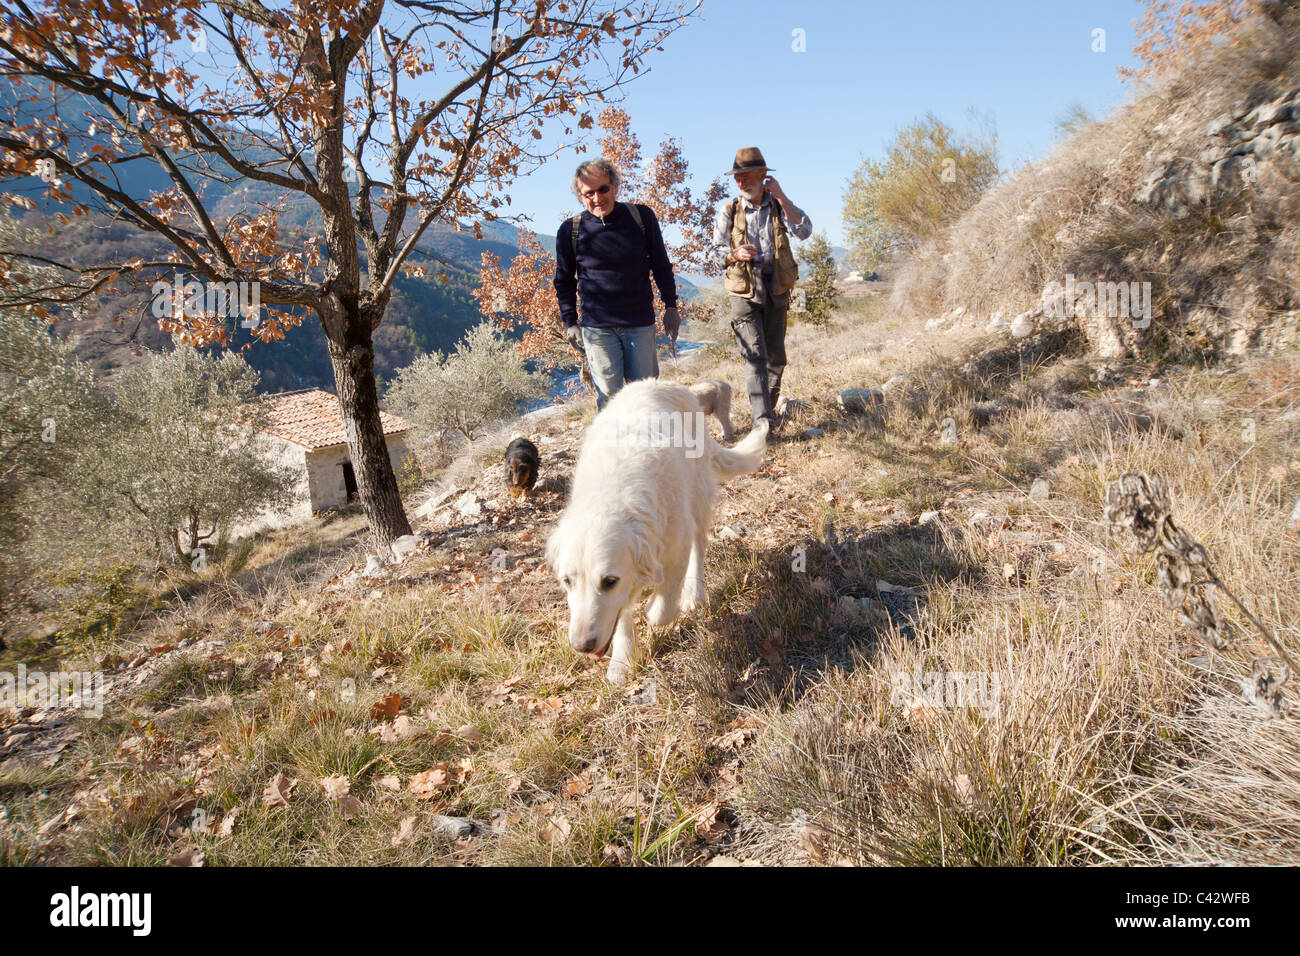 Jean Claude Authier Authier Max et énoncées dans les Français hills sur une chasse aux truffes avec leur chien truffe Banque D'Images